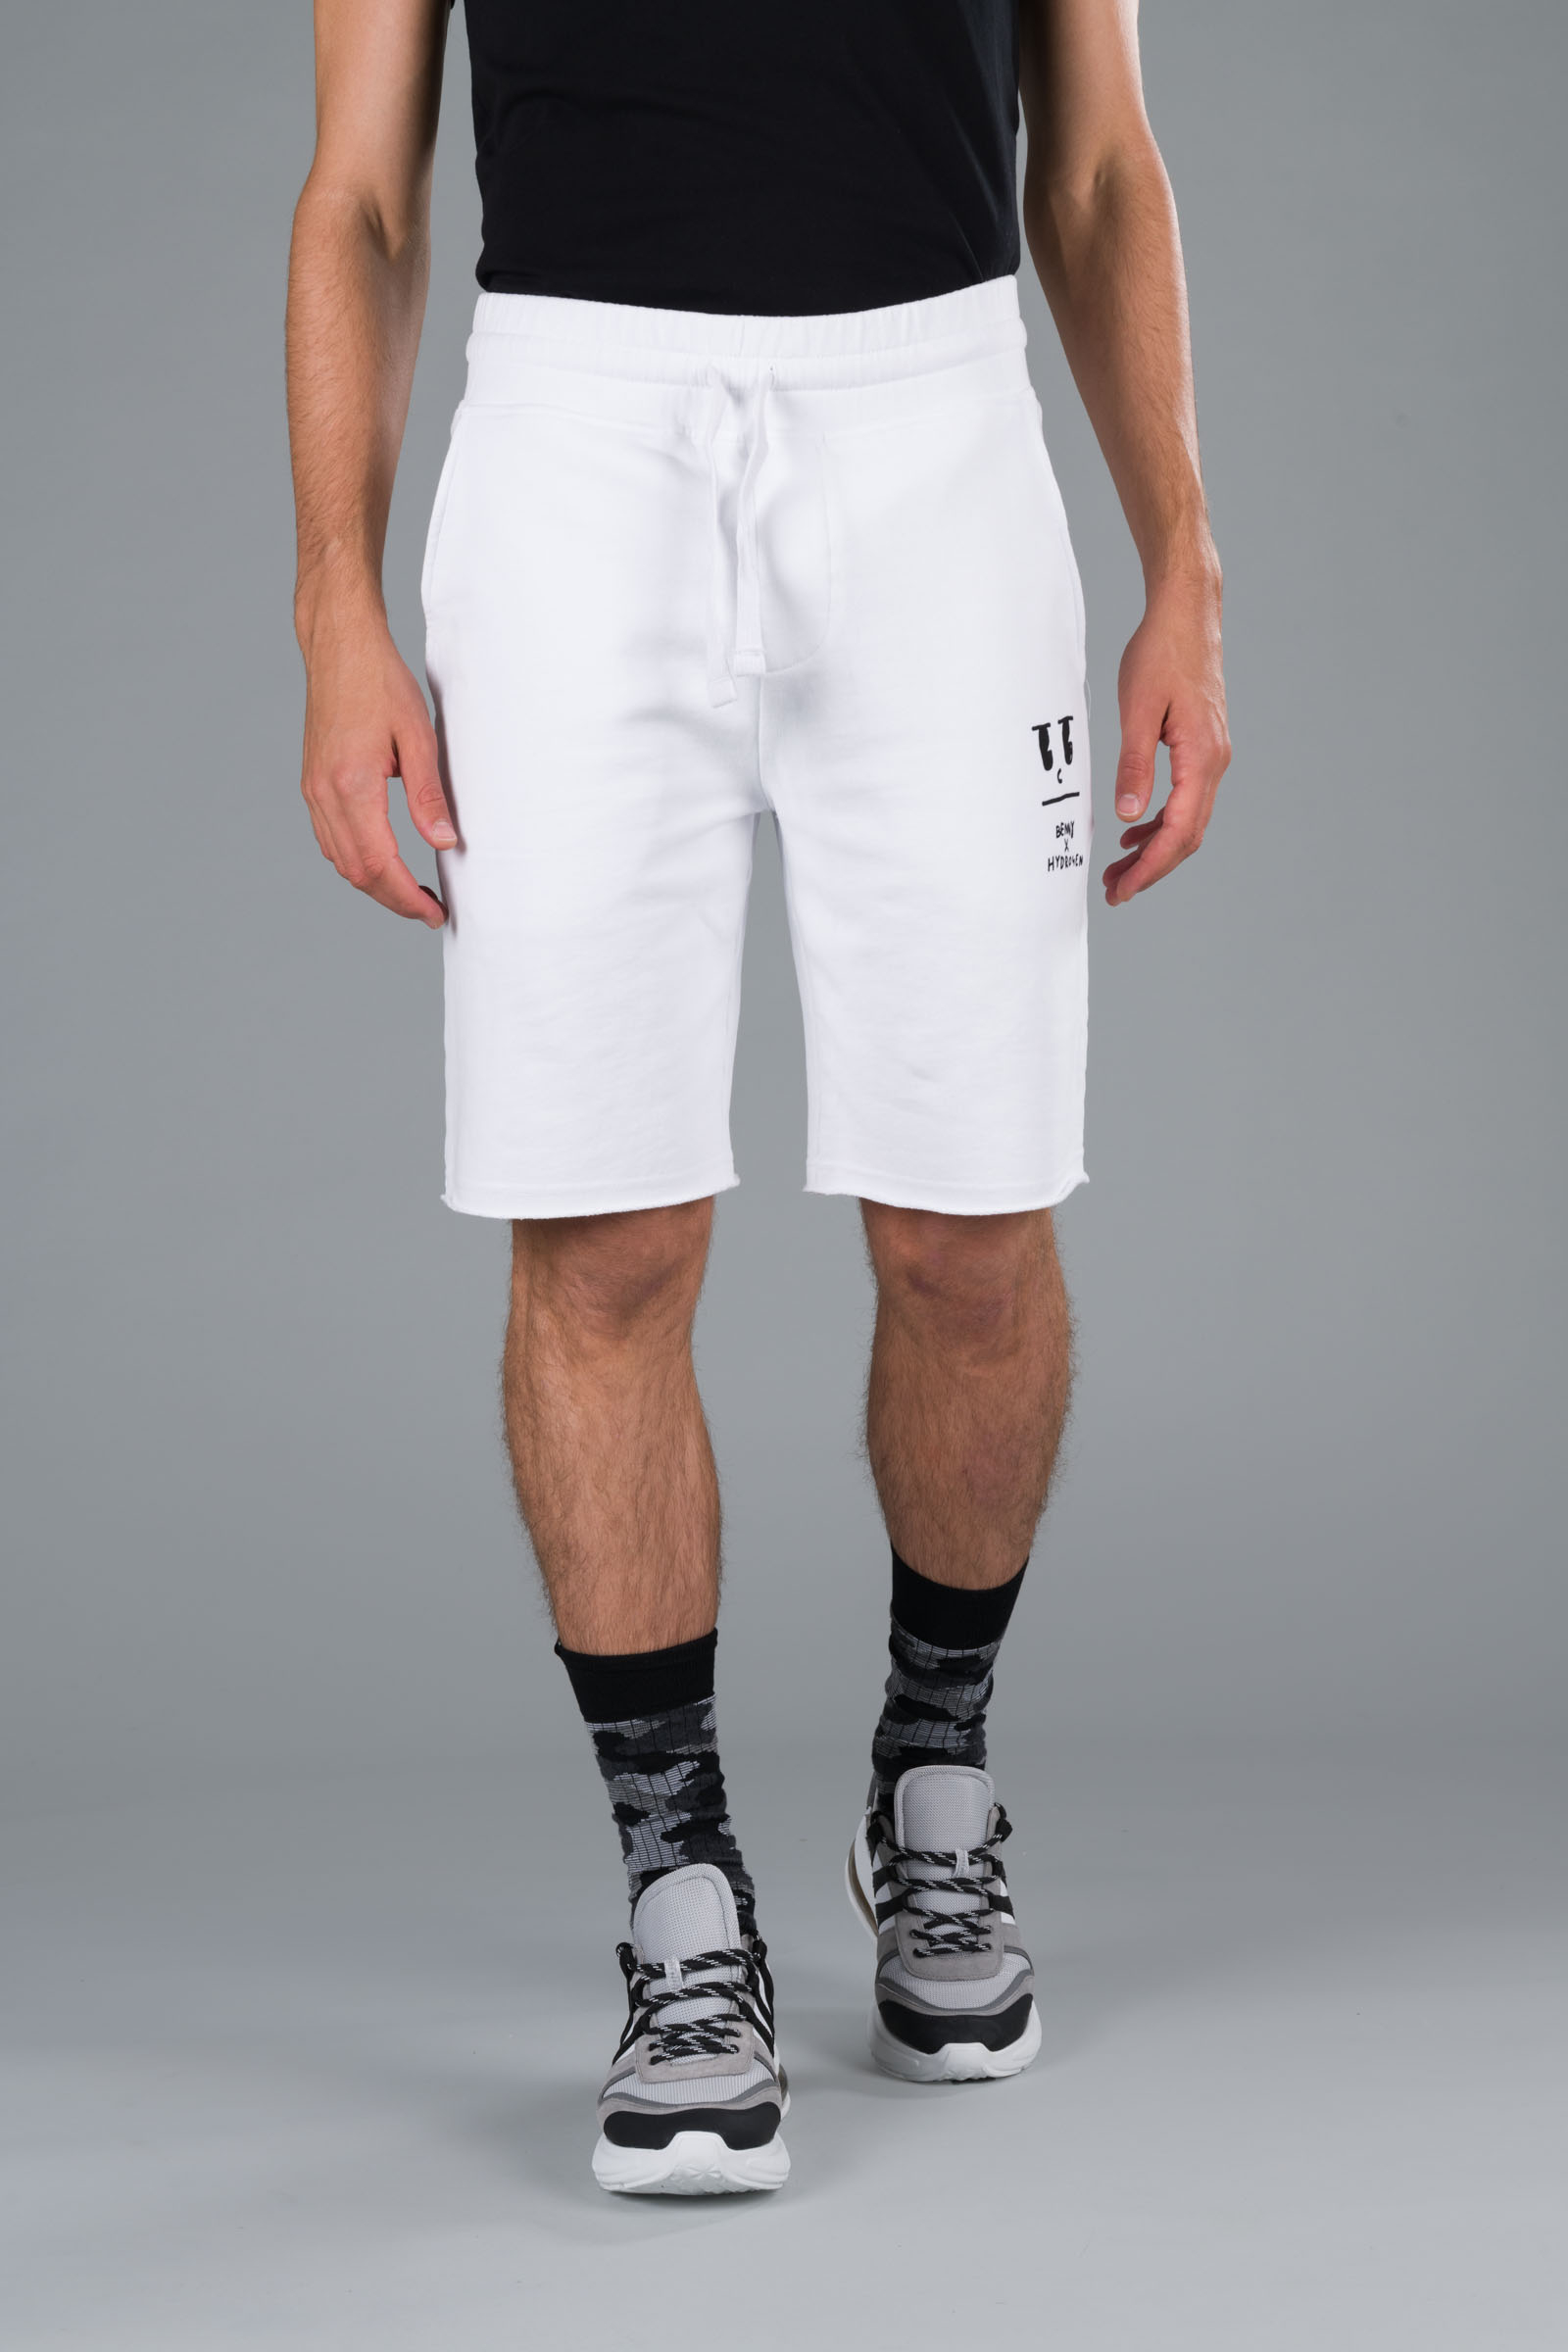 BENNY SHORTS - WHITE - Hydrogen - Luxury Sportwear